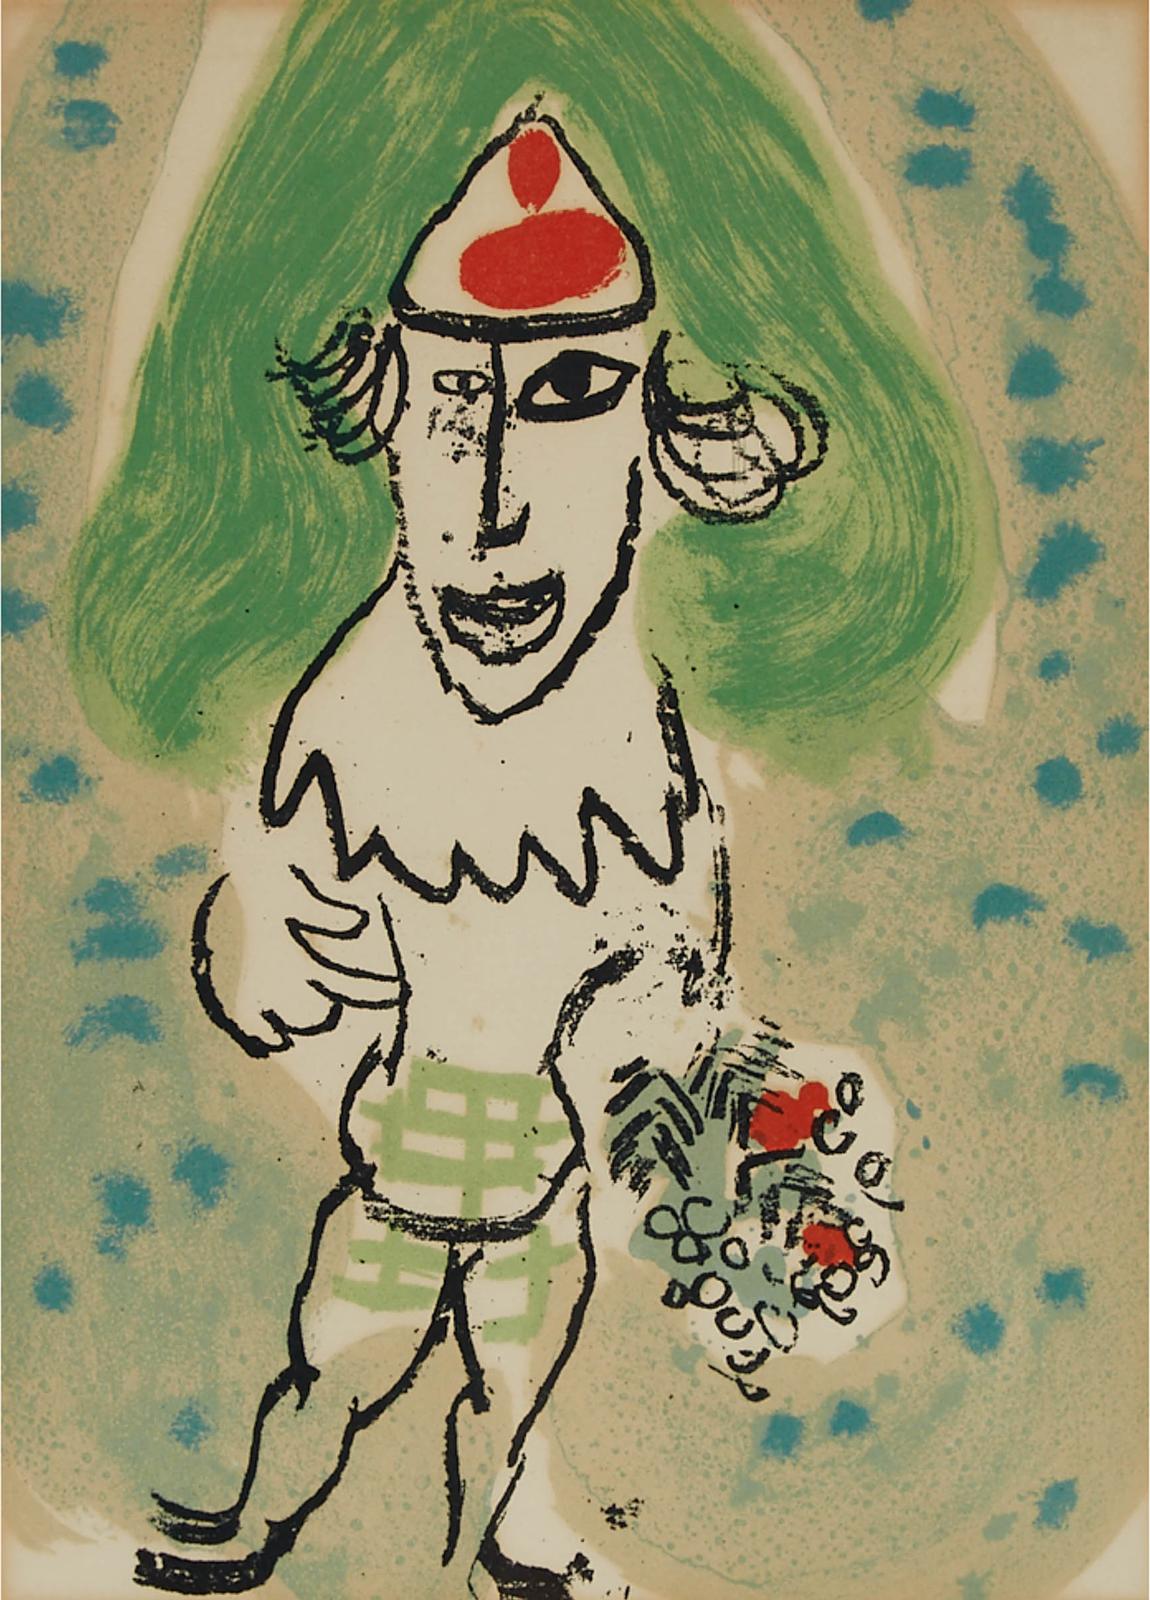 Marc Chagall (1887-1985) - Catalogue Galerie Redfern, 1966 [mourlot 468]